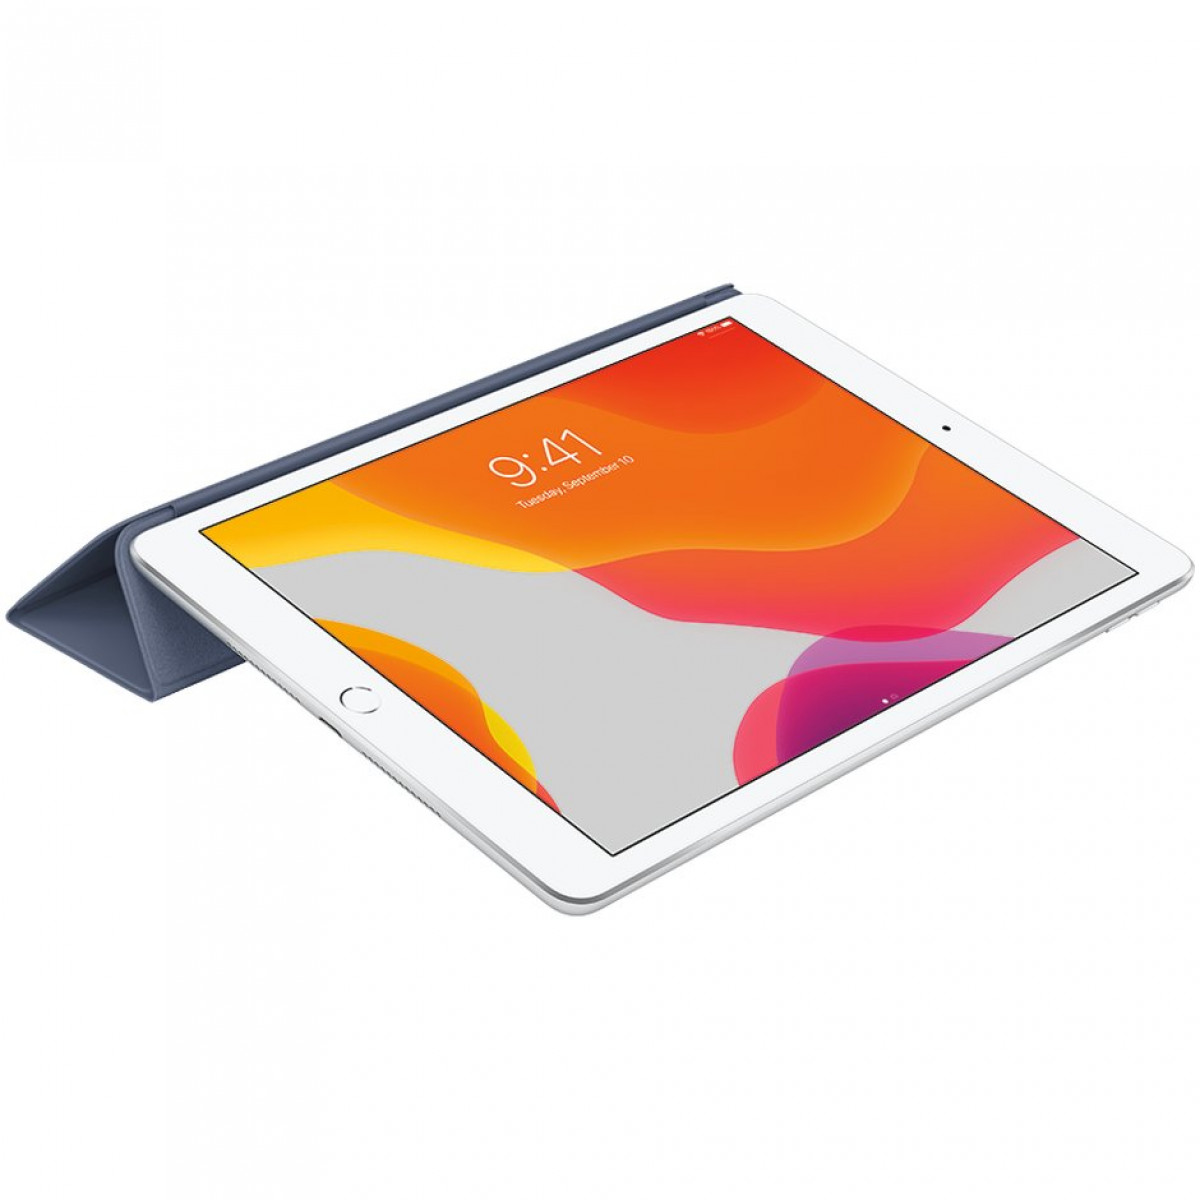 Обложка Smart Cover для iPad 9,7 дюйма — темно-синяя